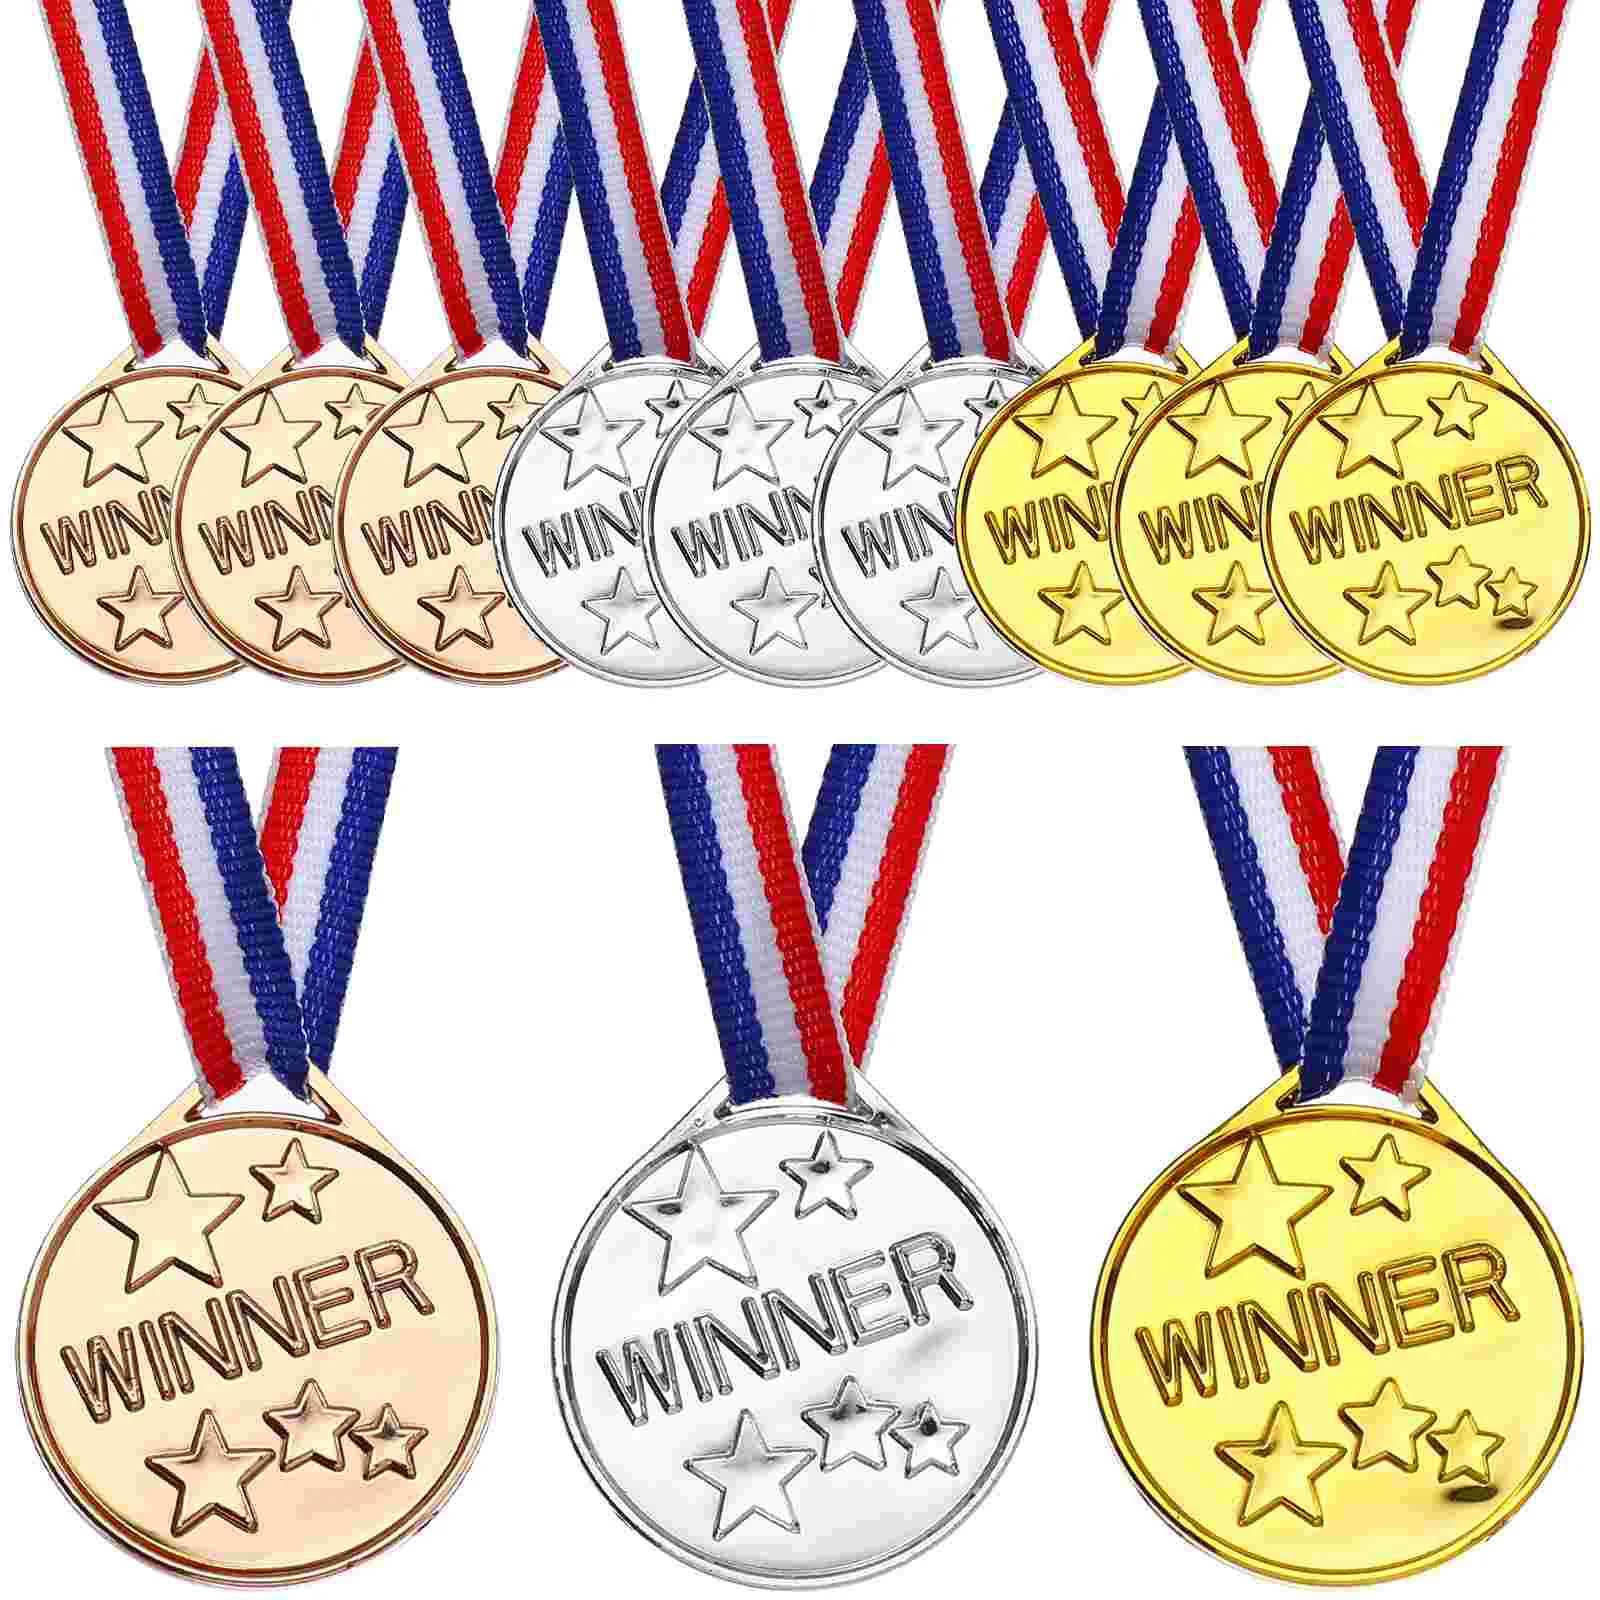 

Детская медаль, медали, ленты, конкурсы, награды на День спорта, детский день рождения, вечерние, сувениры, победители